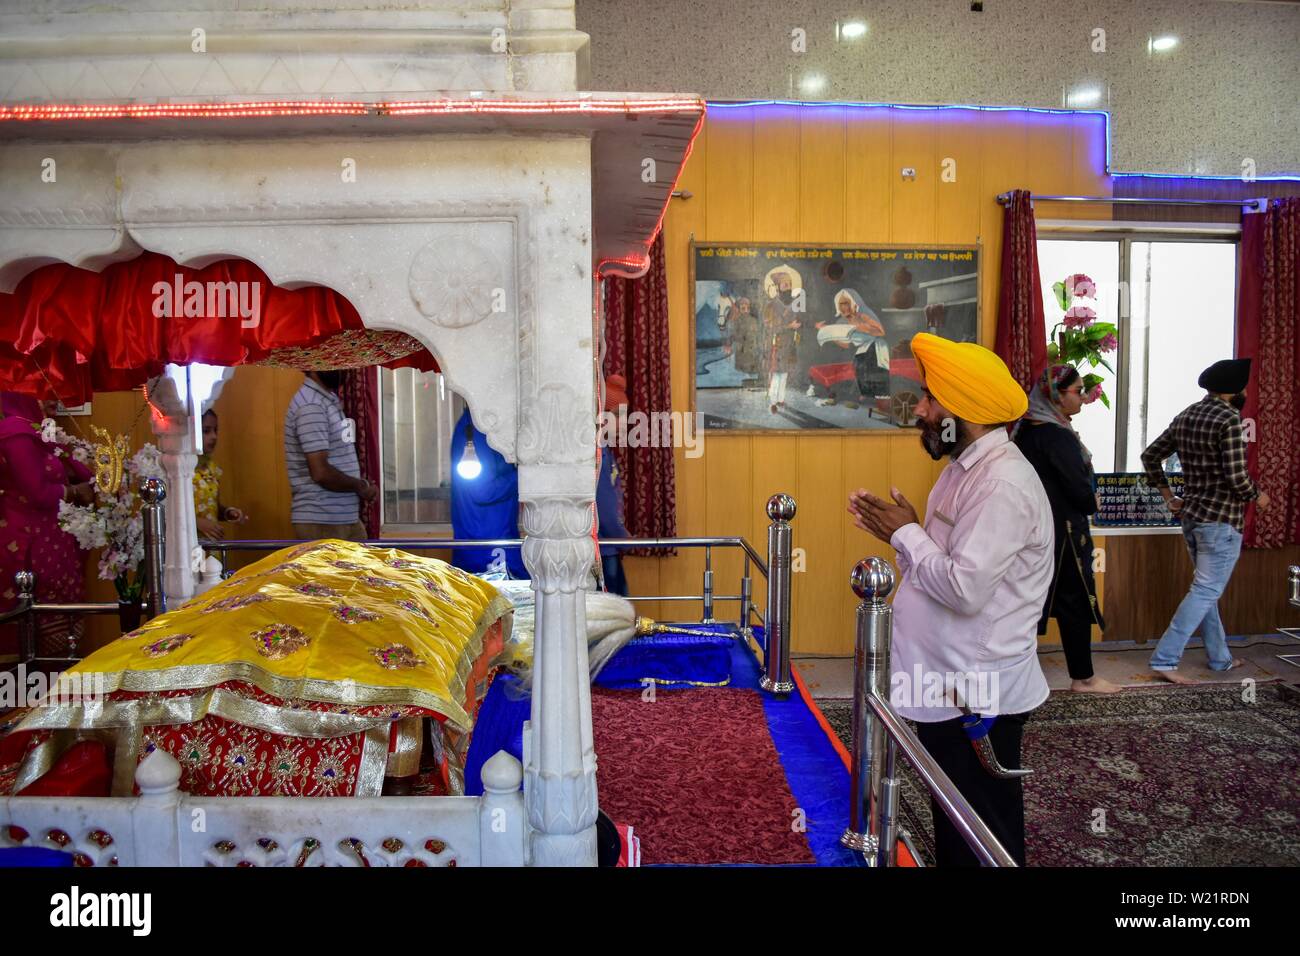 Un dévot prie dans un temple Sikh lors d'un anniversaire de naissance de la sixième gourou, Hargobind Singh à Srinagar.Les Sikhs dans tout le pays célèbrent l'anniversaire de la naissance de leur sixième gourou, Hargobind Singh, vendredi. La célébration a eu lieu en grande pompe et montrer à un temple Sikh principal ici à Srinagar. Banque D'Images